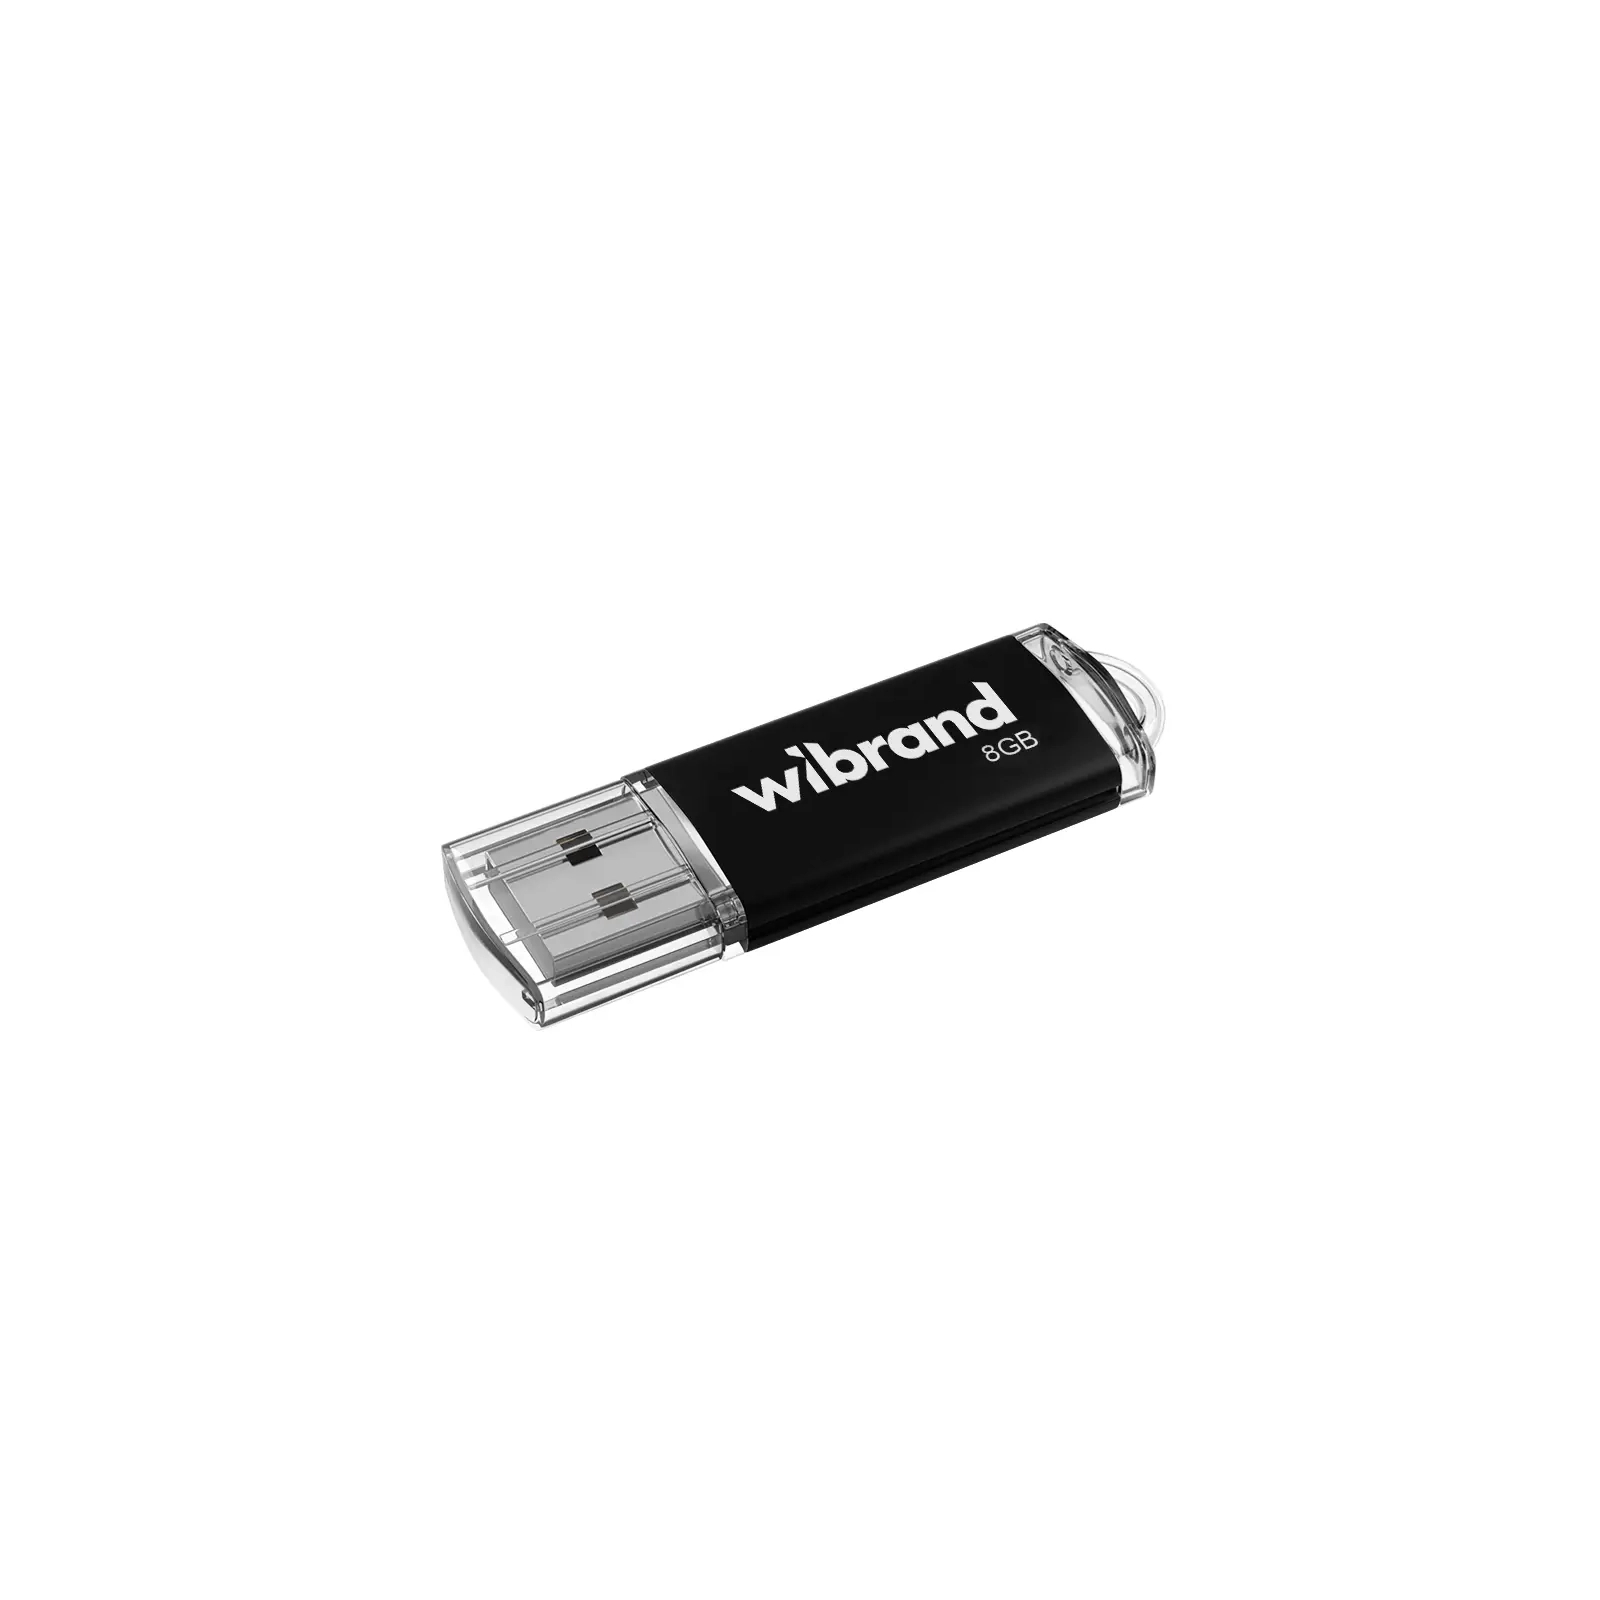 USB флеш накопитель Wibrand 8GB Cougar Black USB 2.0 (WI2.0/CU8P1B)